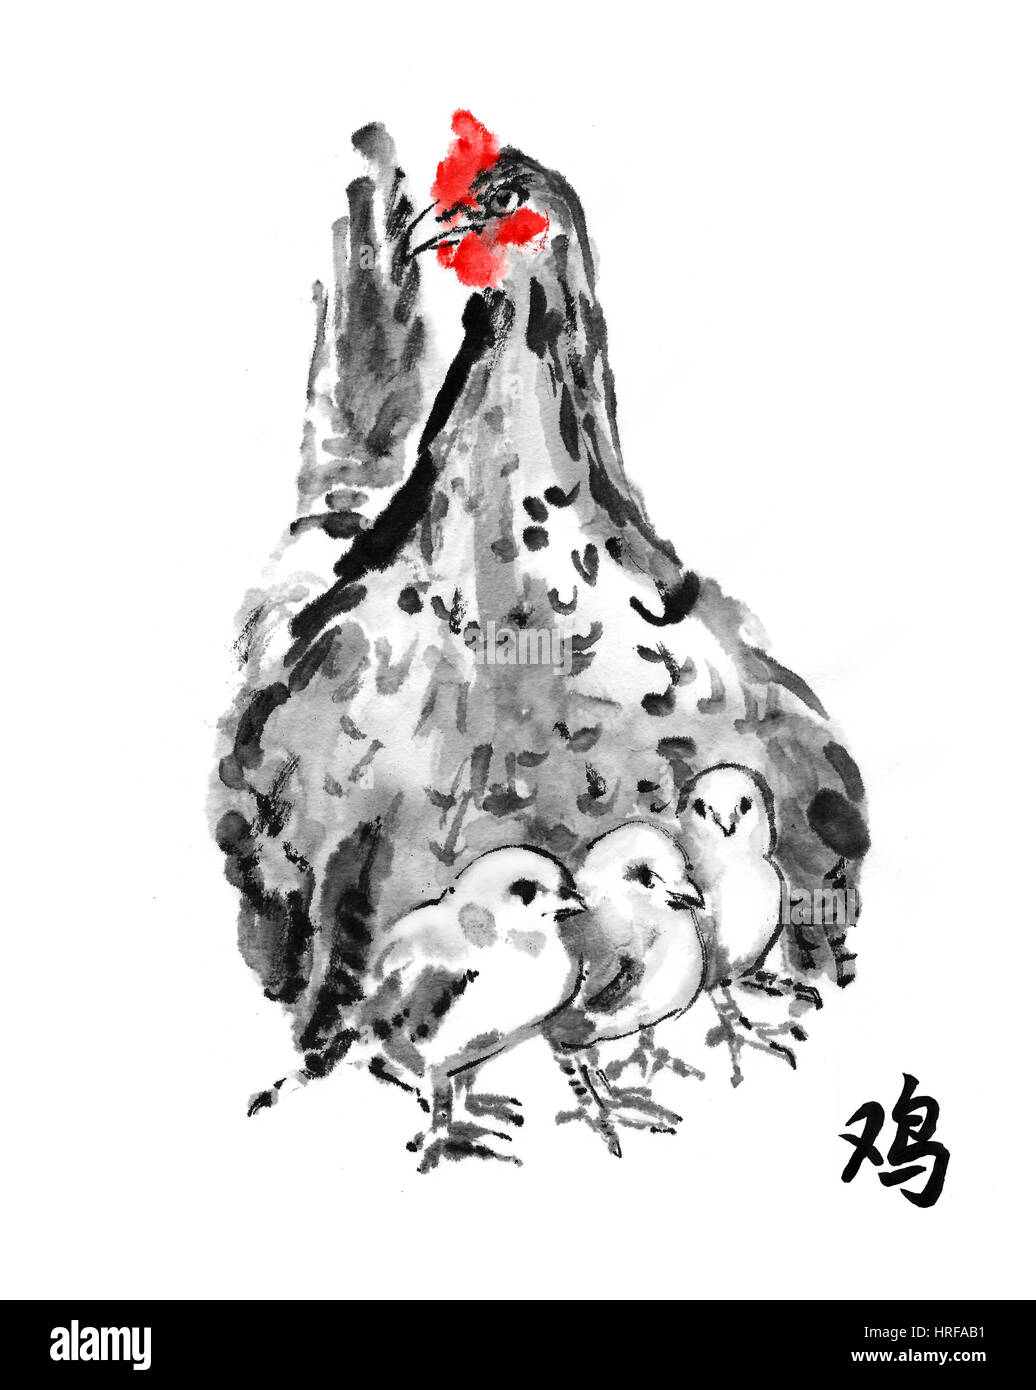 Gallina con pollitos, pintura con tinta orientales jeroglífico "gallo". Sumi-e ilustración aislado sobre fondo blanco. Símbolo del año nuevo chino Foto de stock